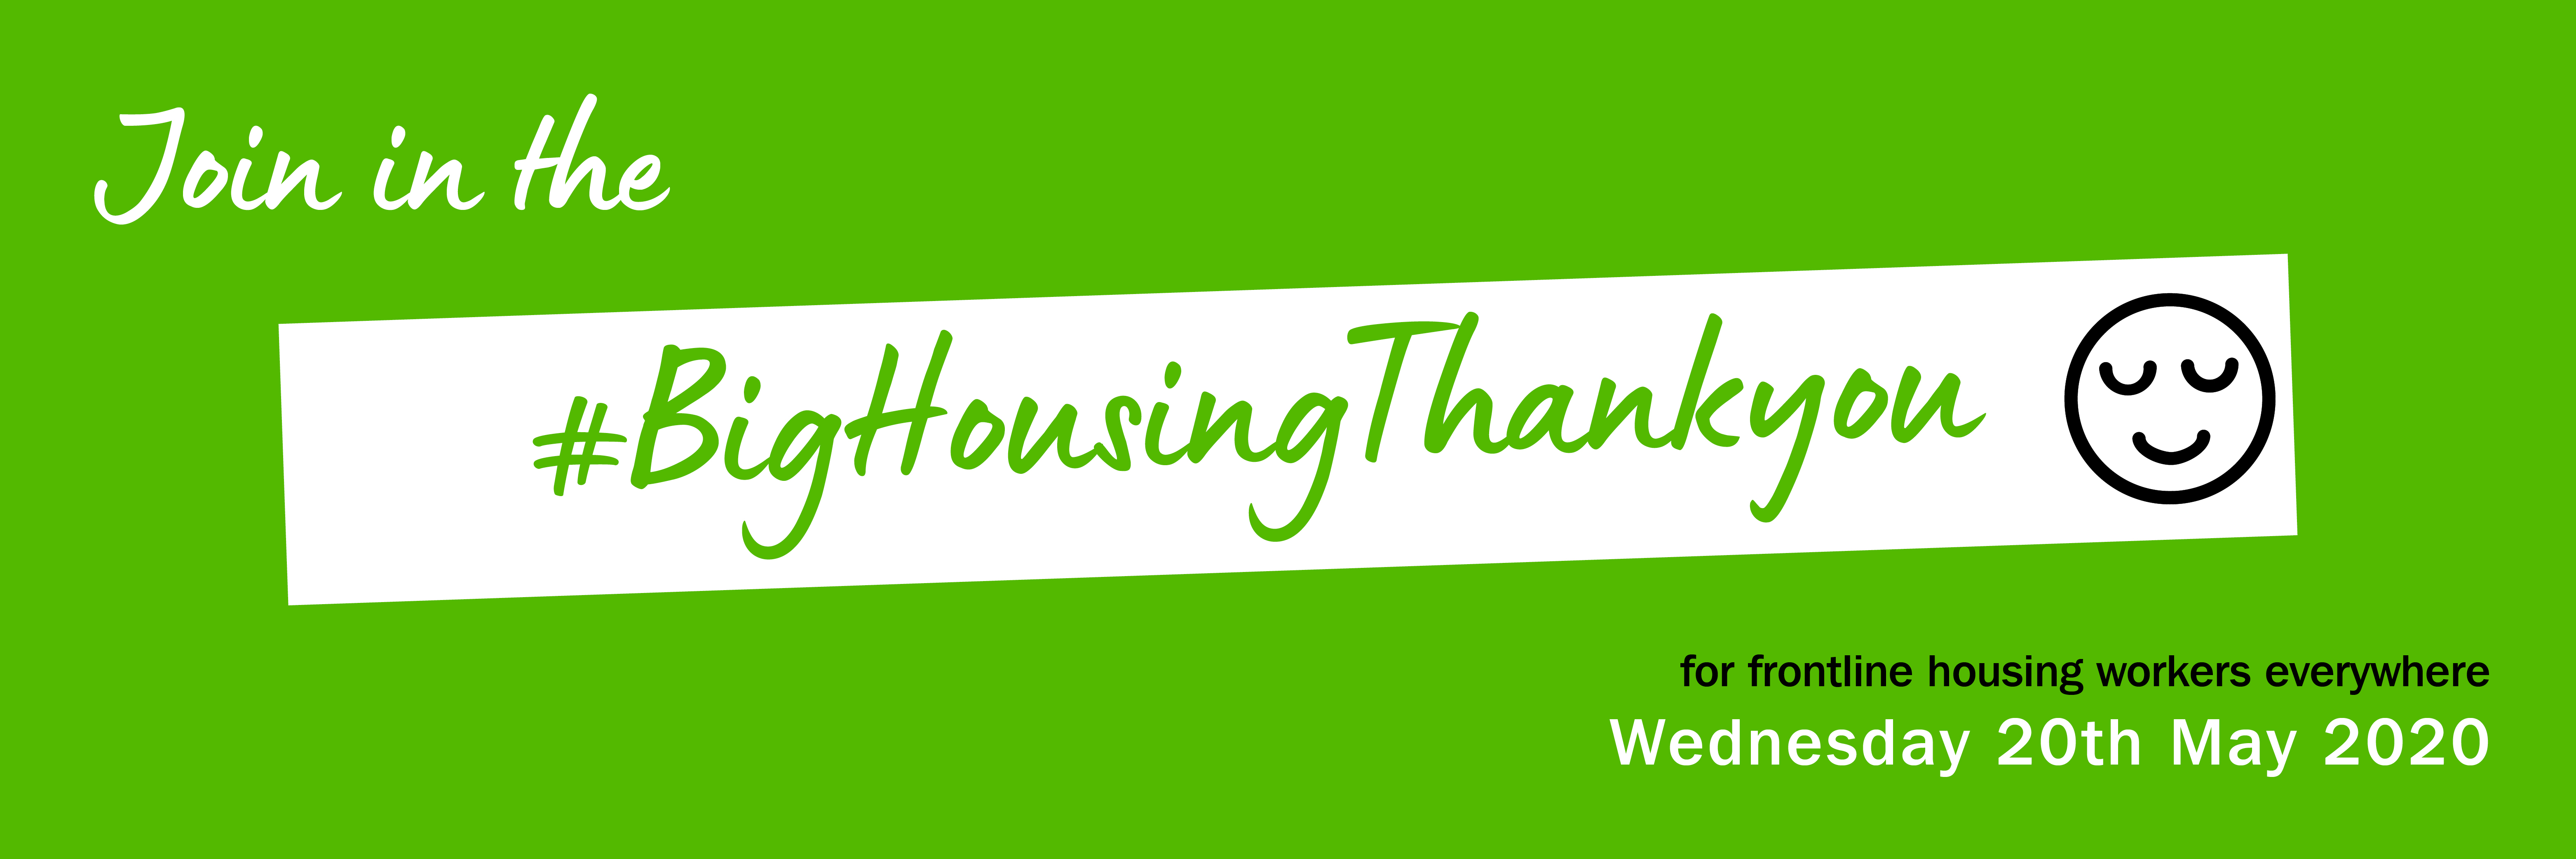 Big housing thank you Twitter banner - green